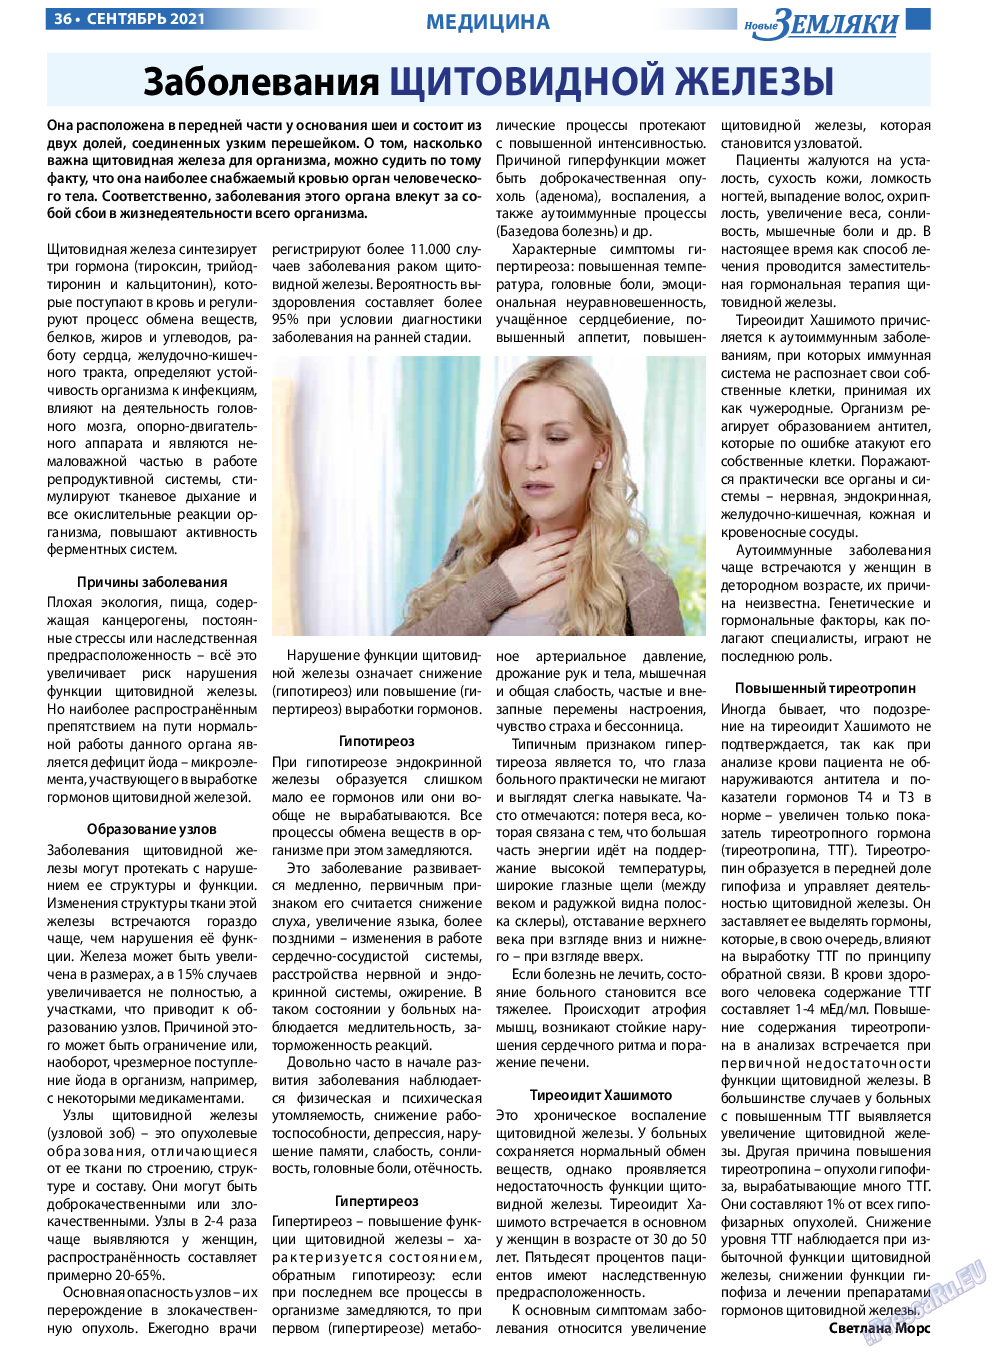 Новые Земляки, газета. 2021 №9 стр.36